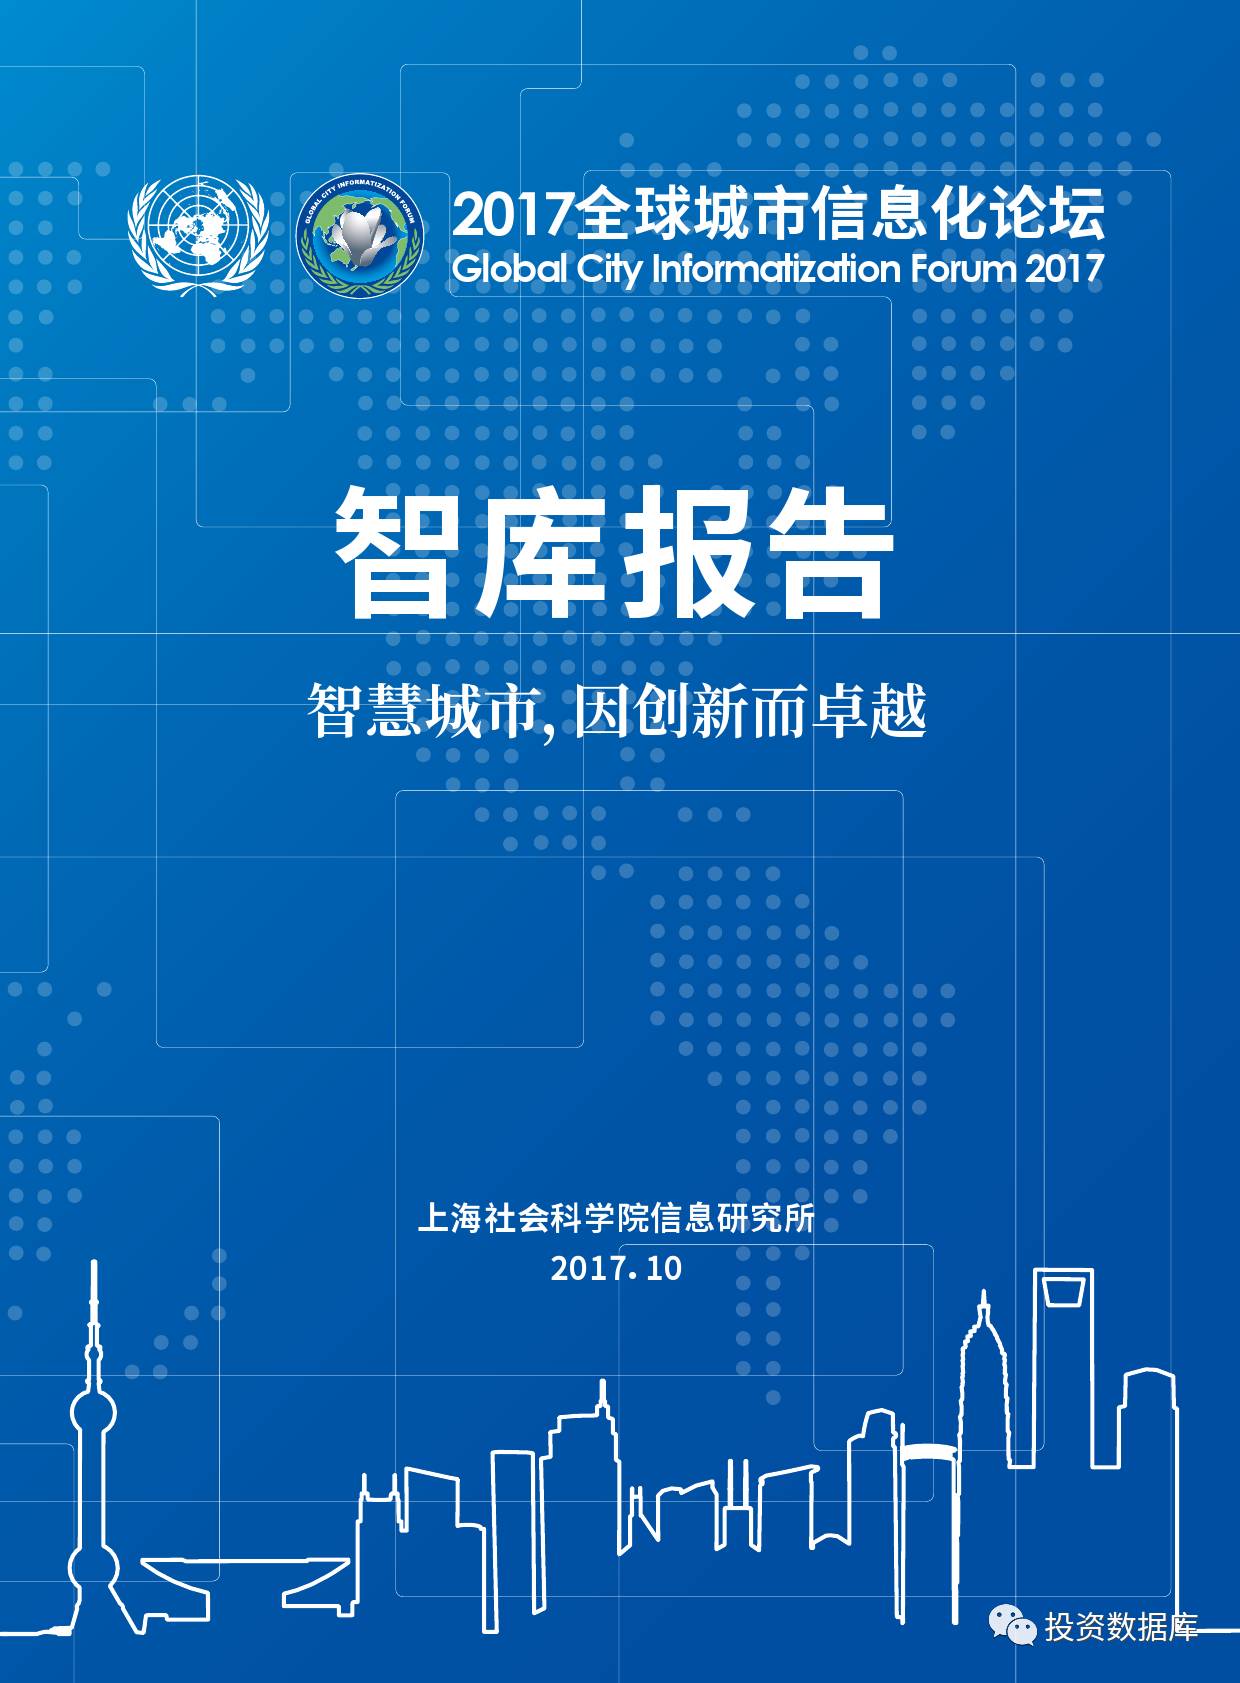 上海社会科学院:2017年全球城市信息化